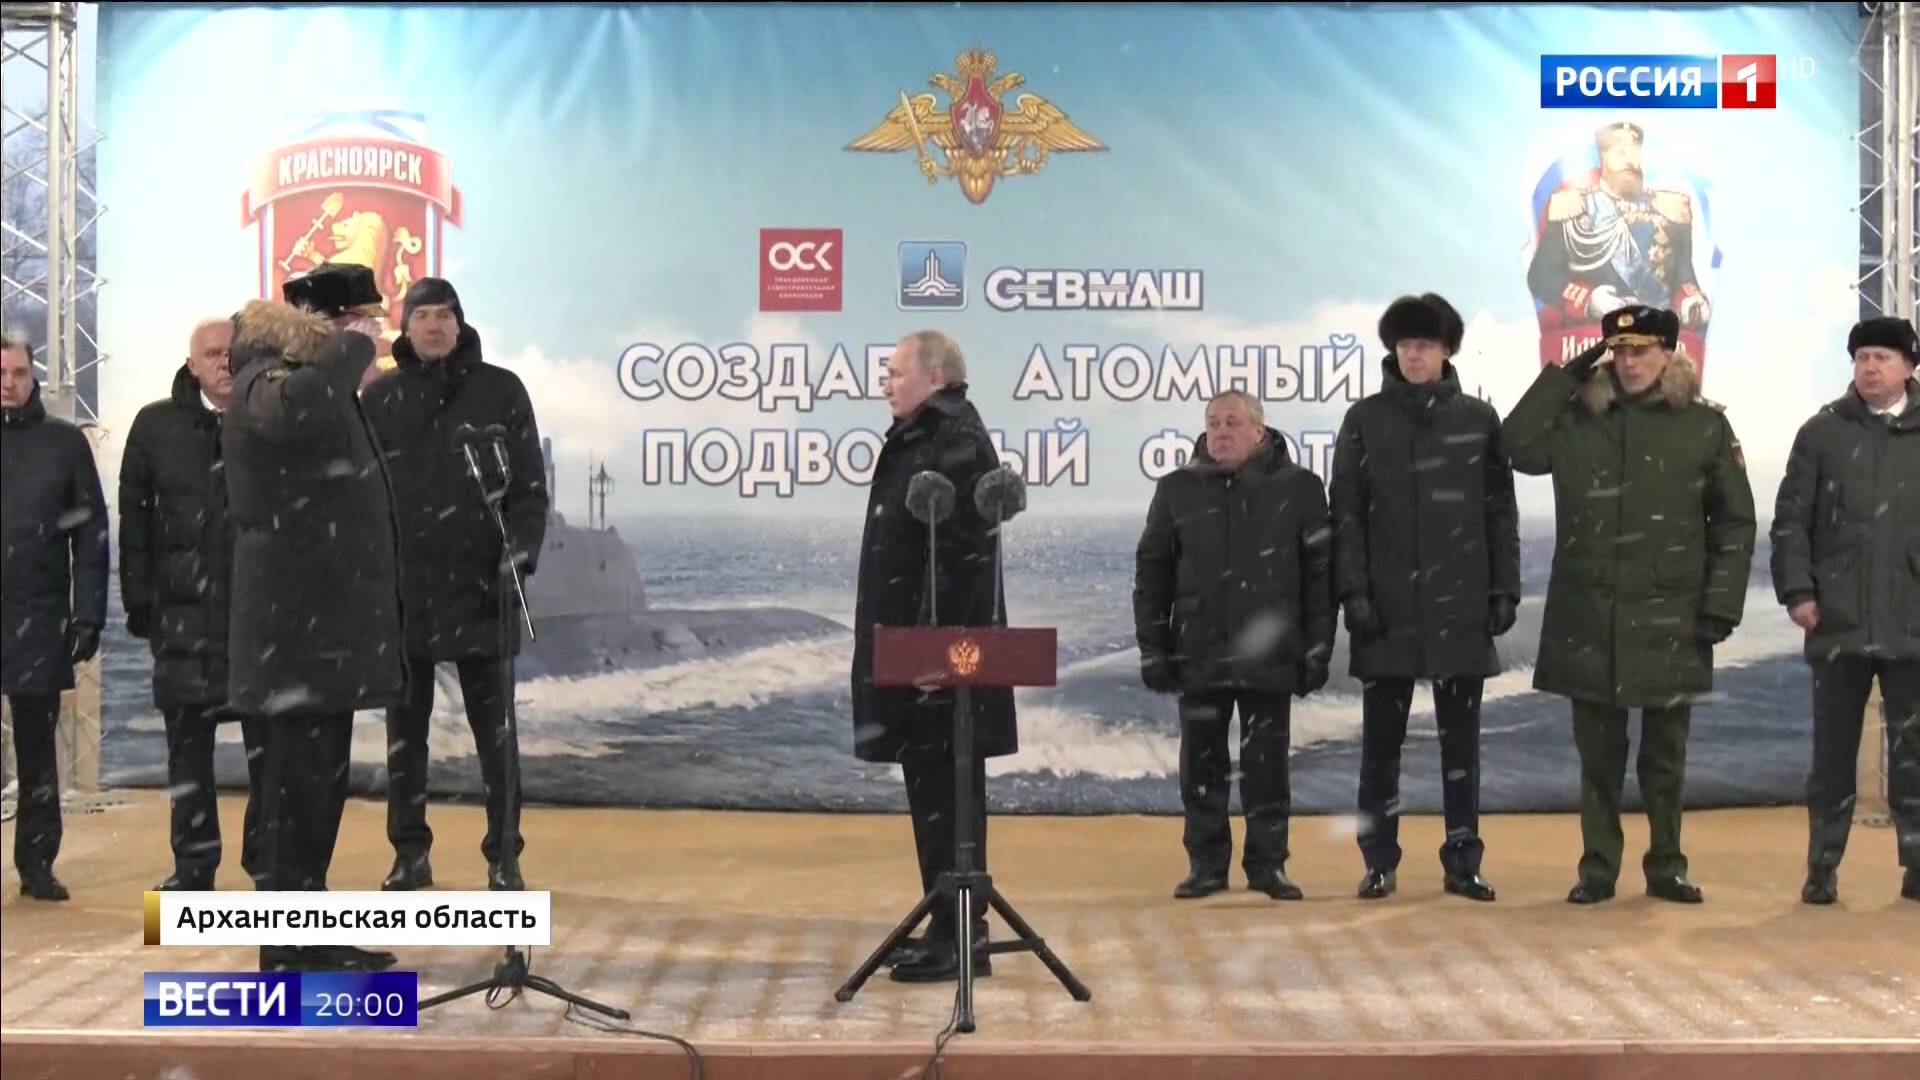 Putin odbiera meludnej męzczyzny w ciepłej kurtce, w tle zdjęcie łodzi podwodnej